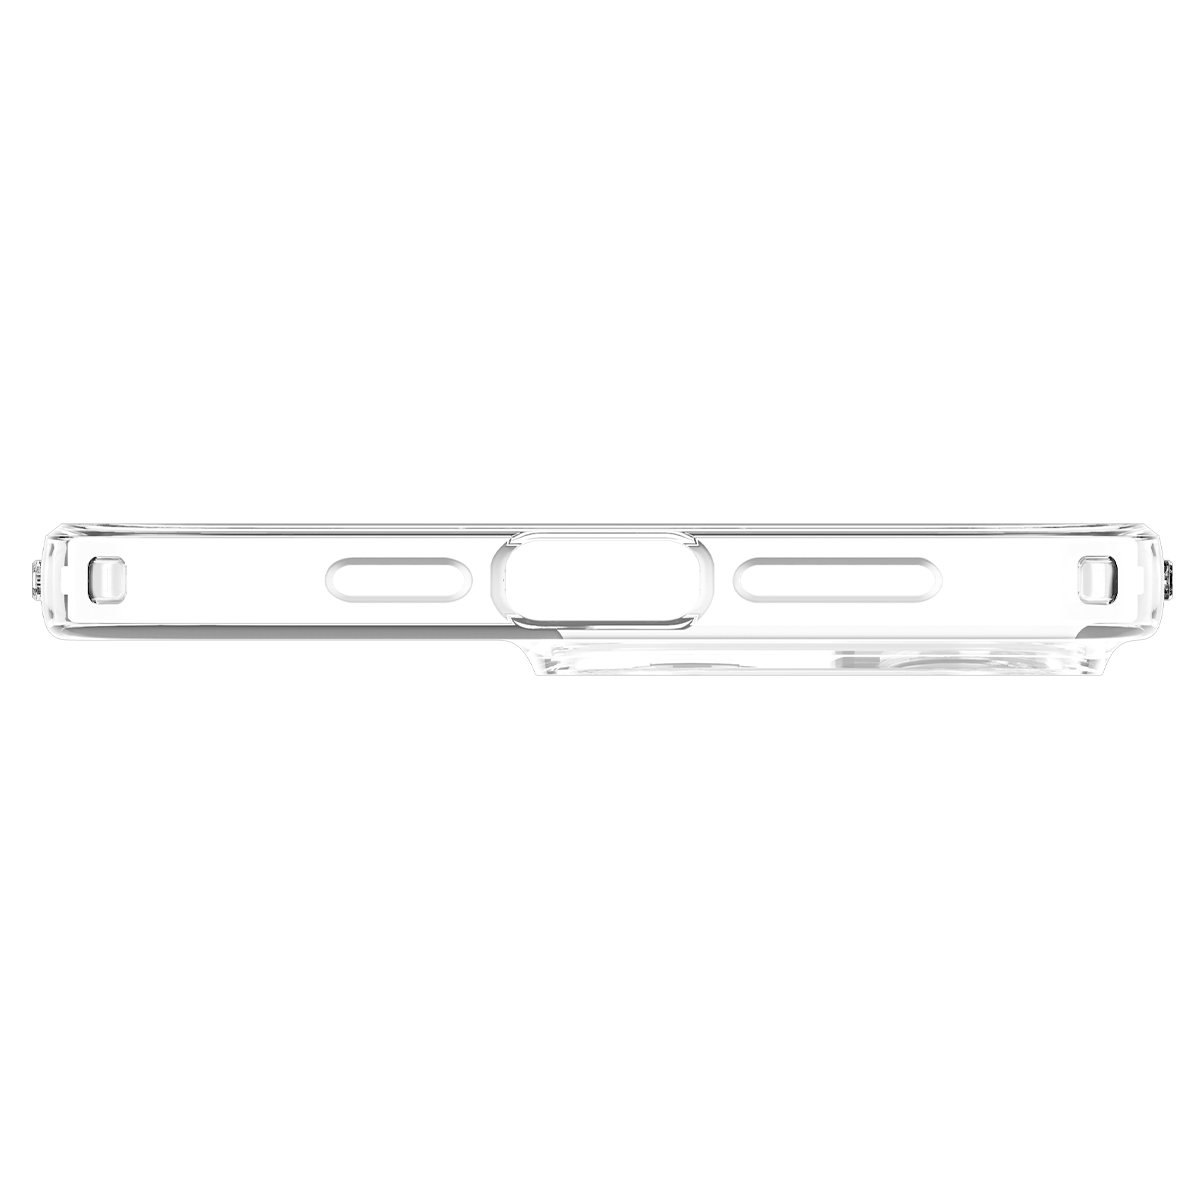 Ốp Lưng dành cho iPhone 14 Pro Max Spigen Liquid Crystal Case - Hàng Chính Hãng